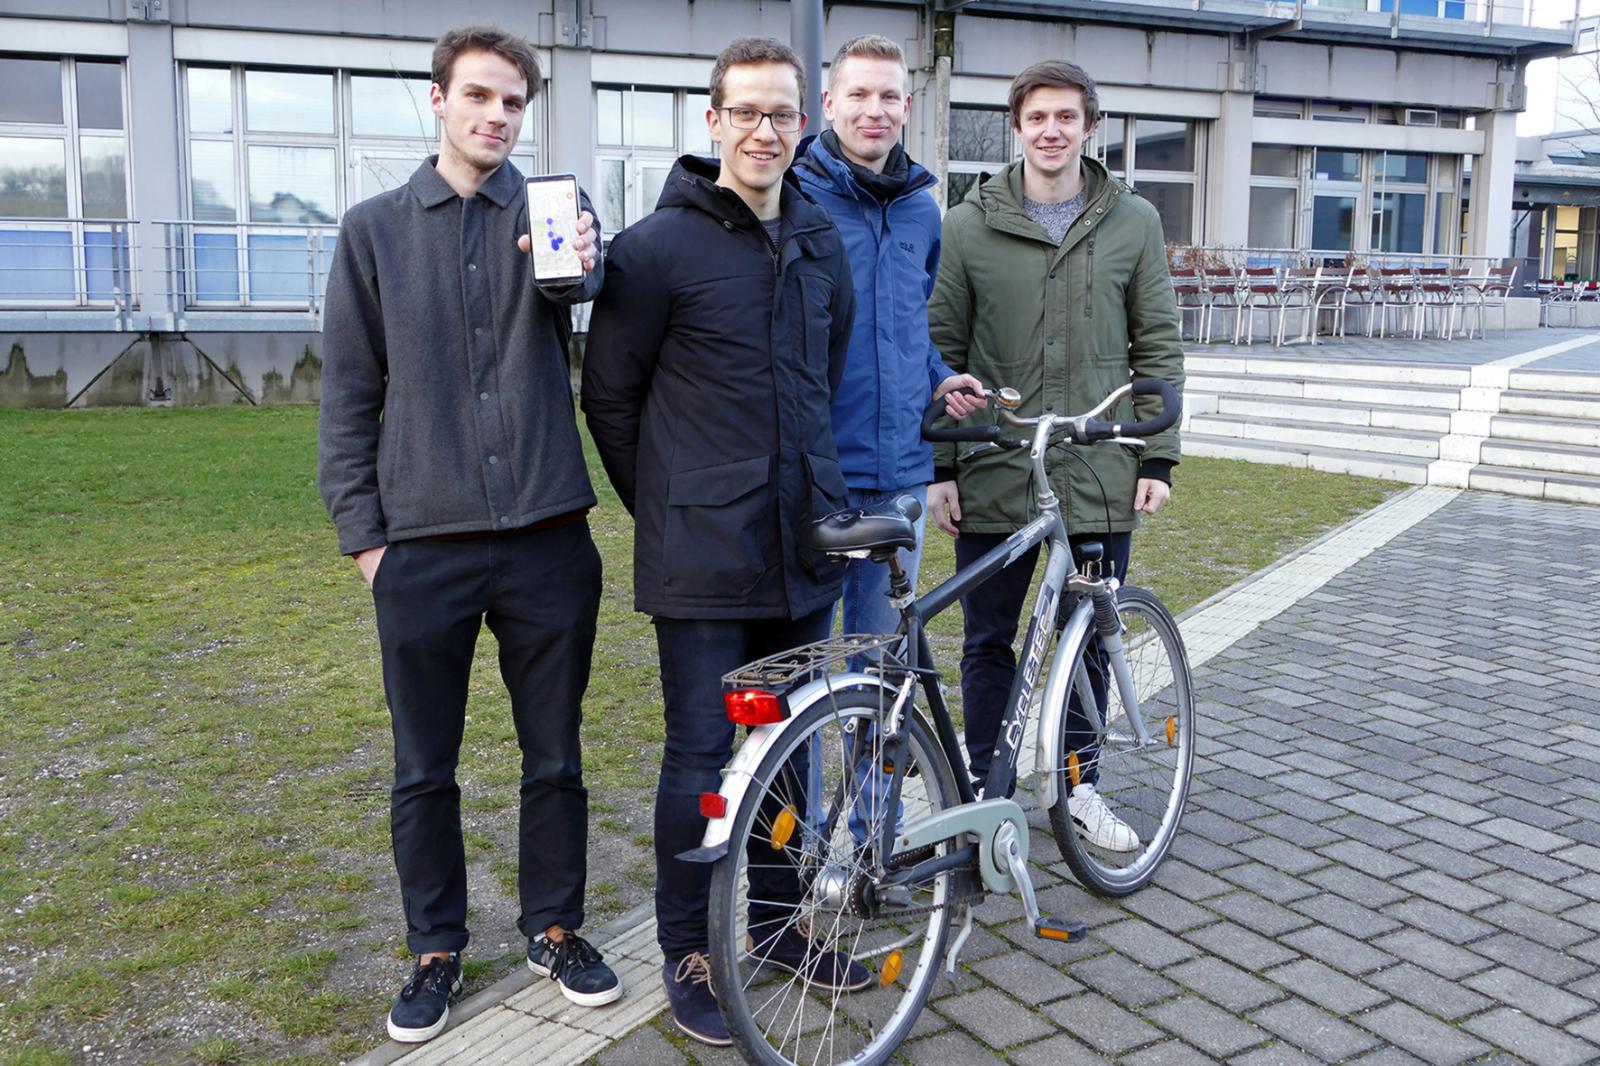 Felix Weissberg, Frank Lenfert, Christian Tapken und Simon Ebbers (v.l.) haben ein smartes Fahrradrücklicht mit Ortungssystem entwickelt. Das Foto ist entstanden, bevor die Schutzmaßnahmen zum Coronavirus kamen. (Foto: FH Münster/Jana Schiller) 